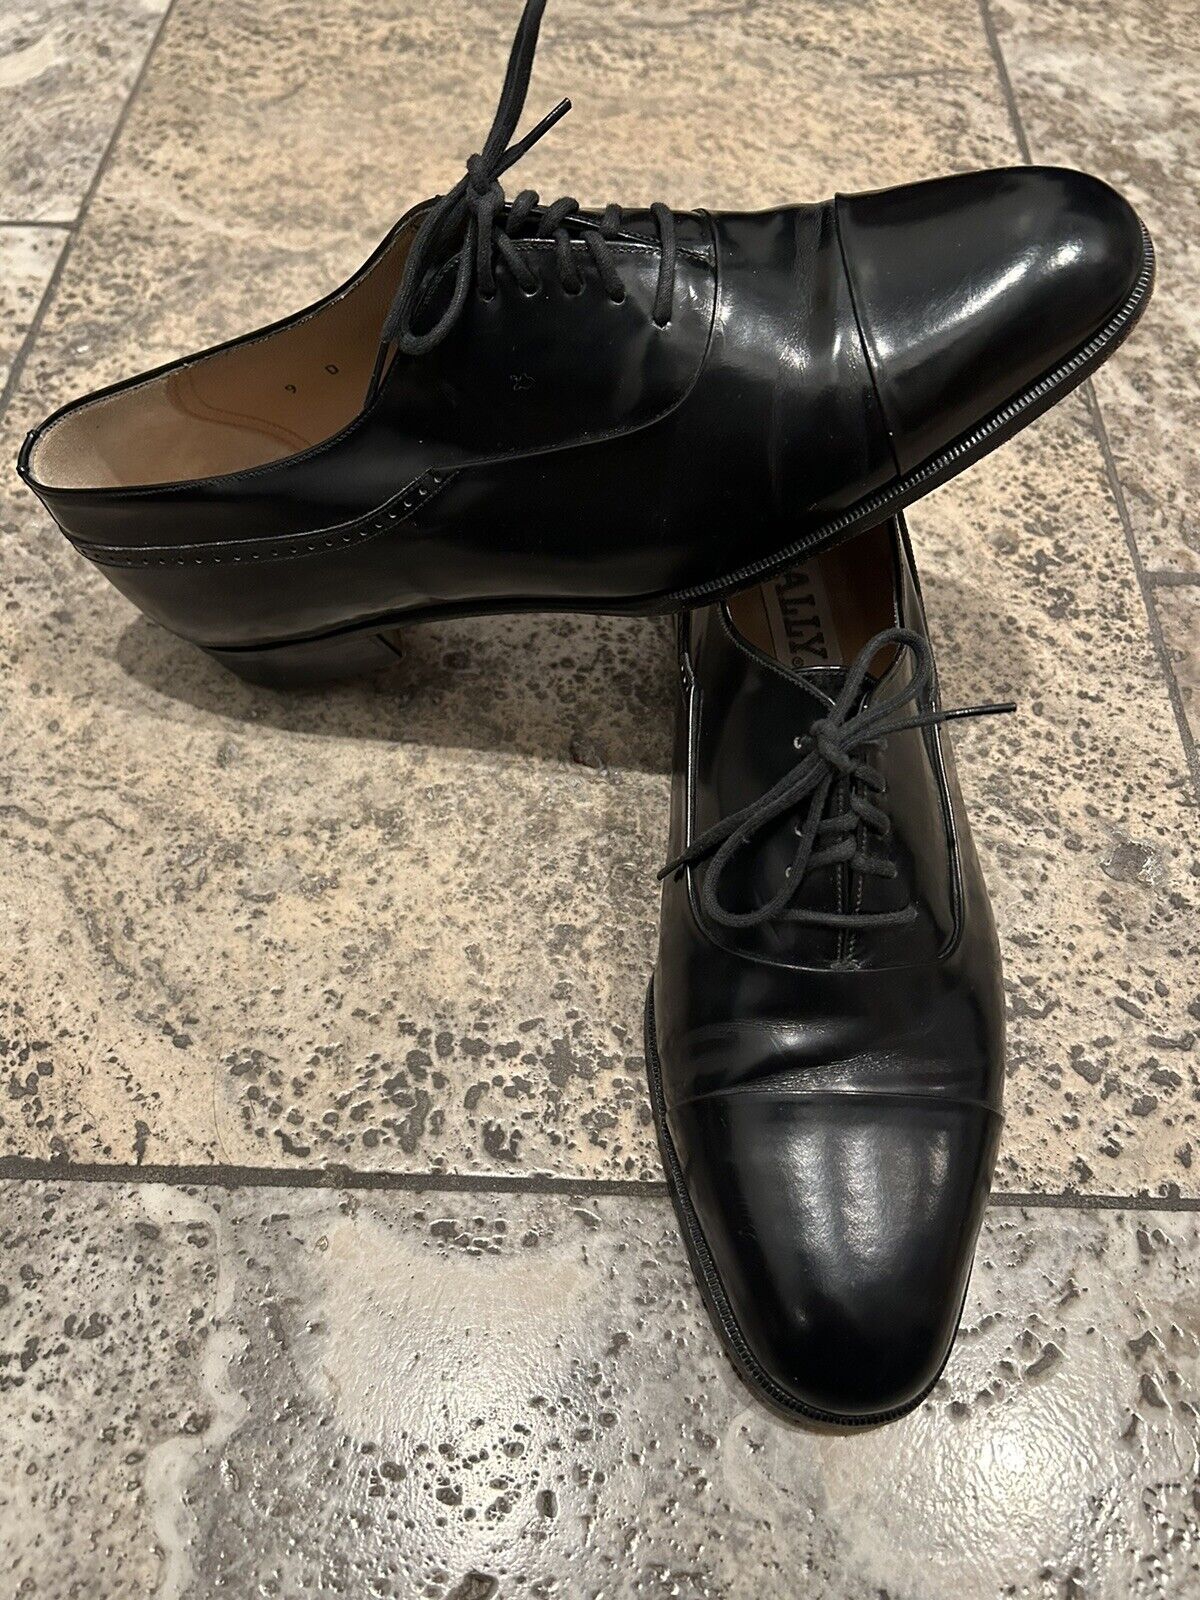 Bally Men’s Dress Shoes Vintage Cap Toe Black 9 D